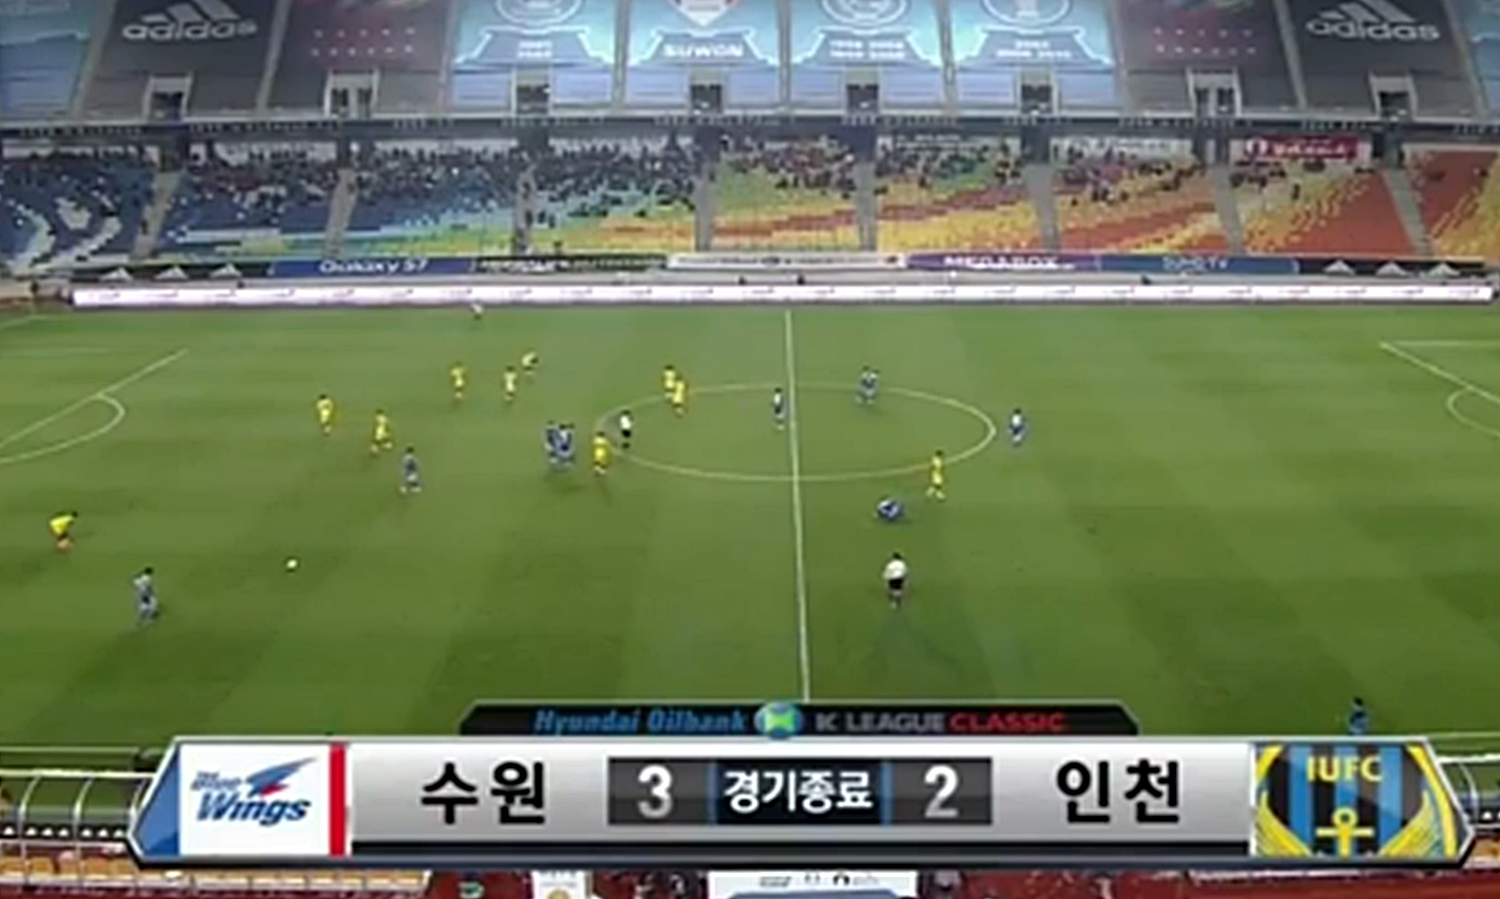 Incheon đã thất bại 2-3 trong trận đấu rất quan trọng. Ảnh chụp màn hình